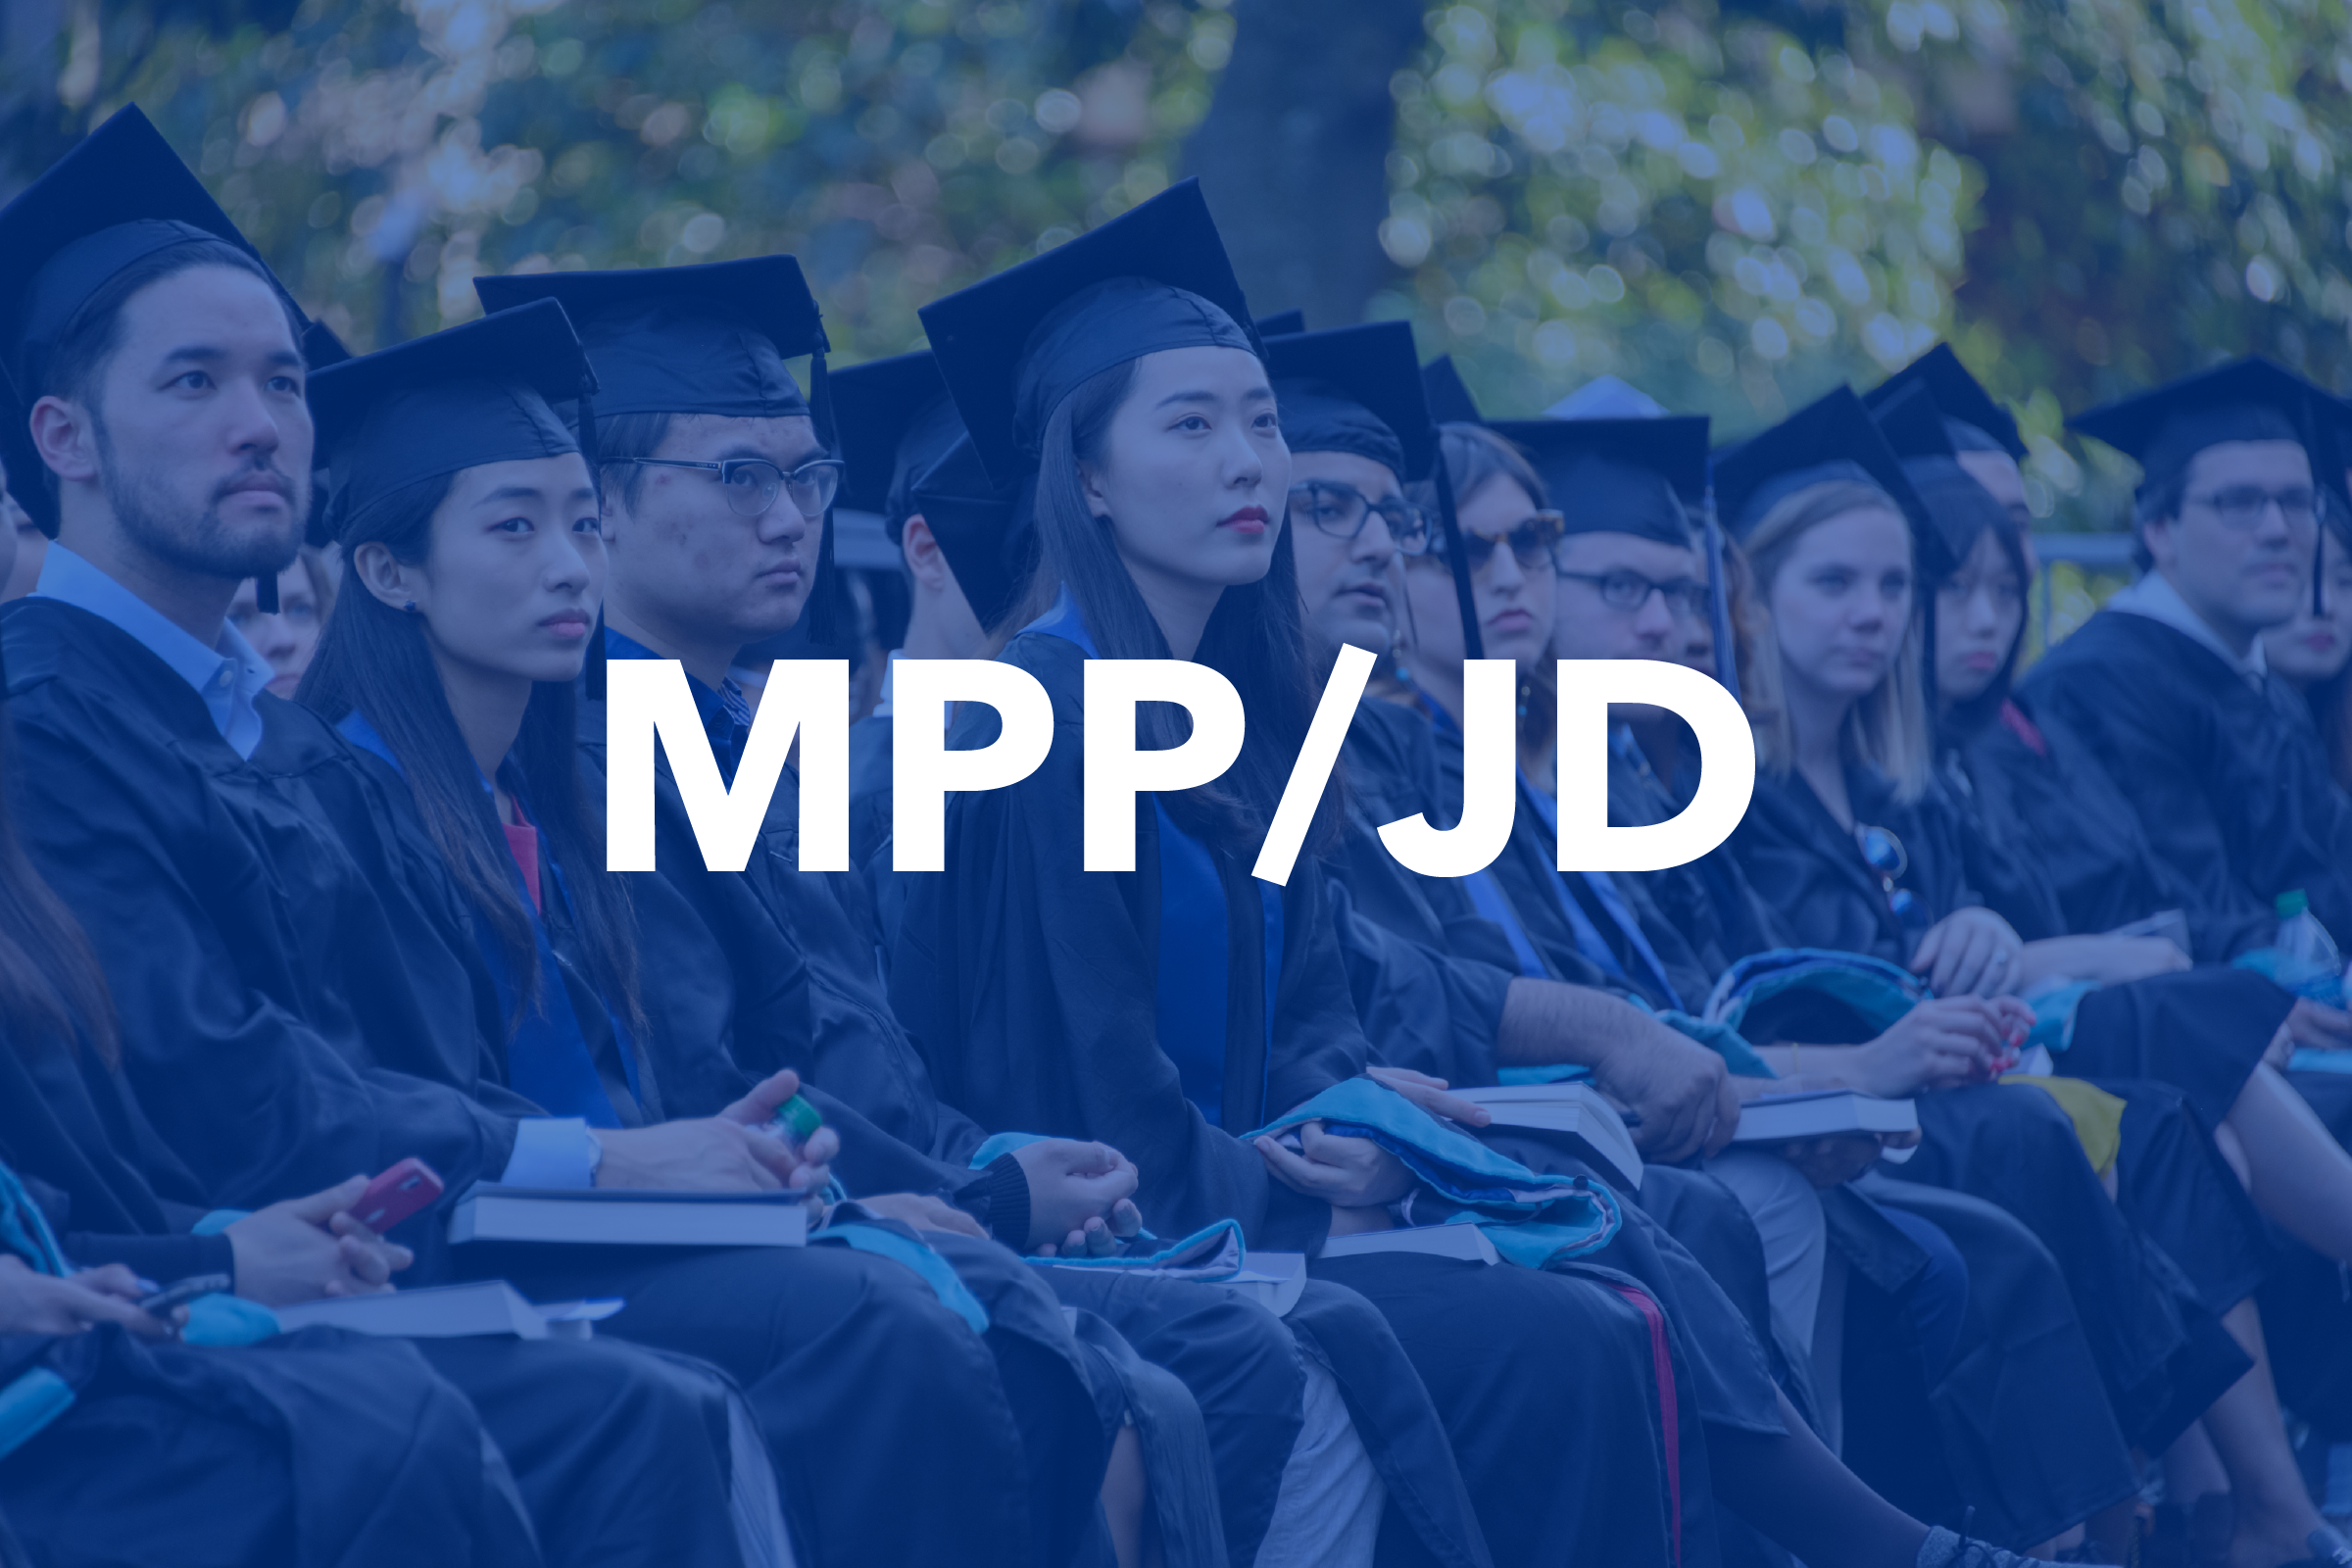 MPP/JD